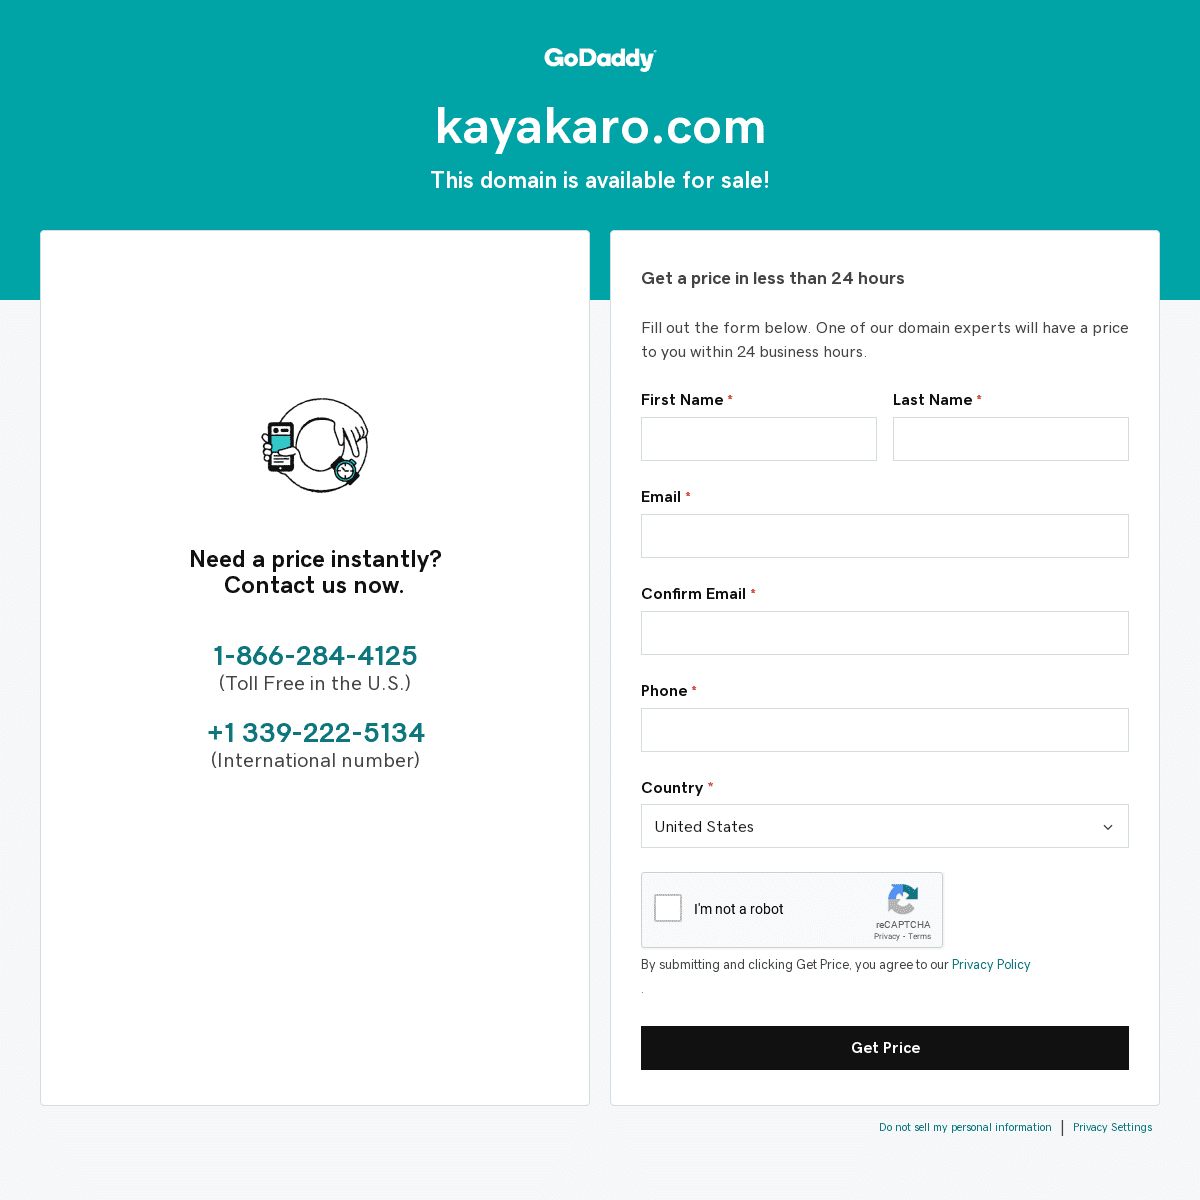 A complete backup of kayakaro.com